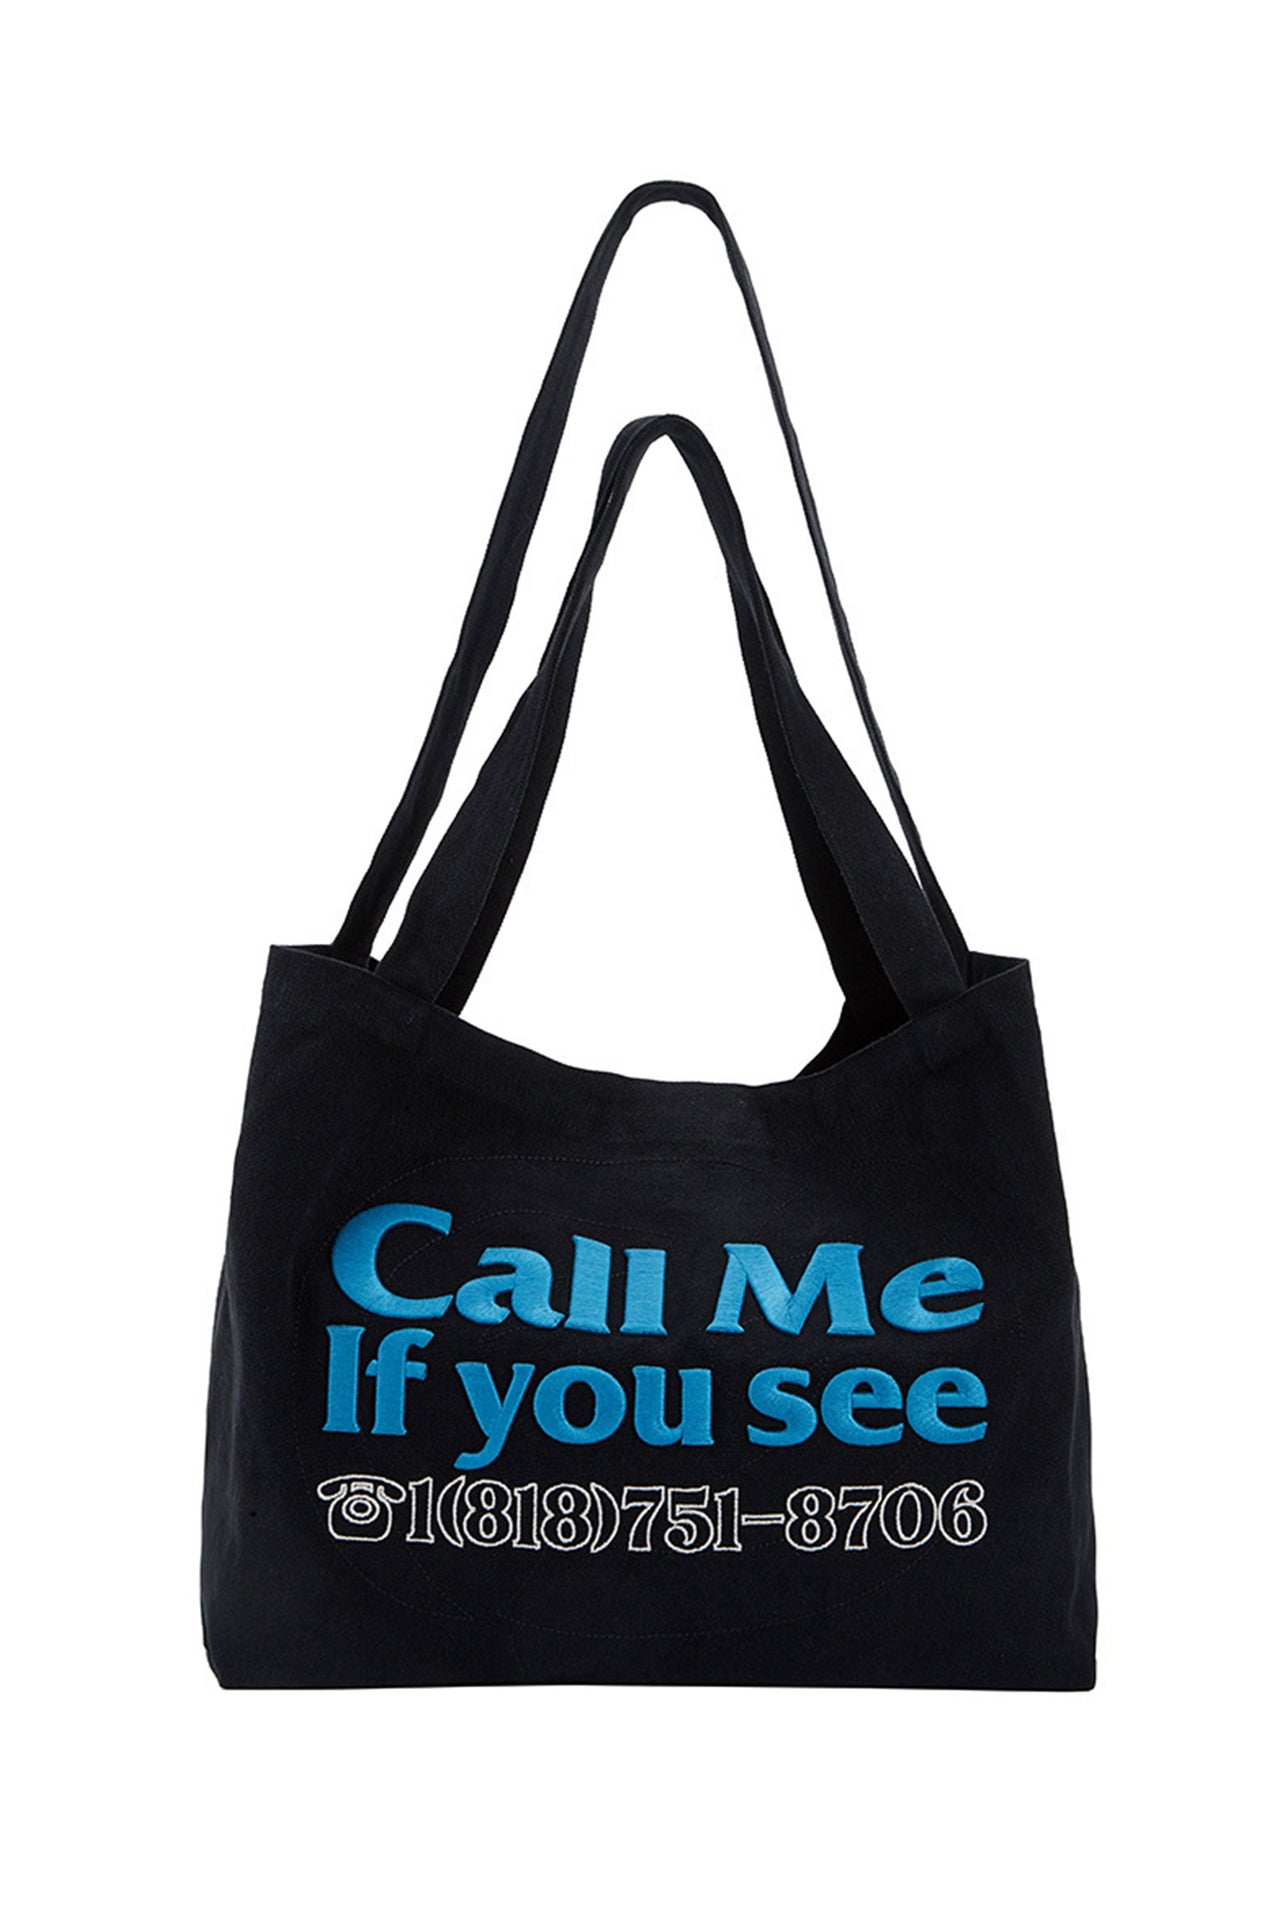 "Call me if you see" Tote Bag